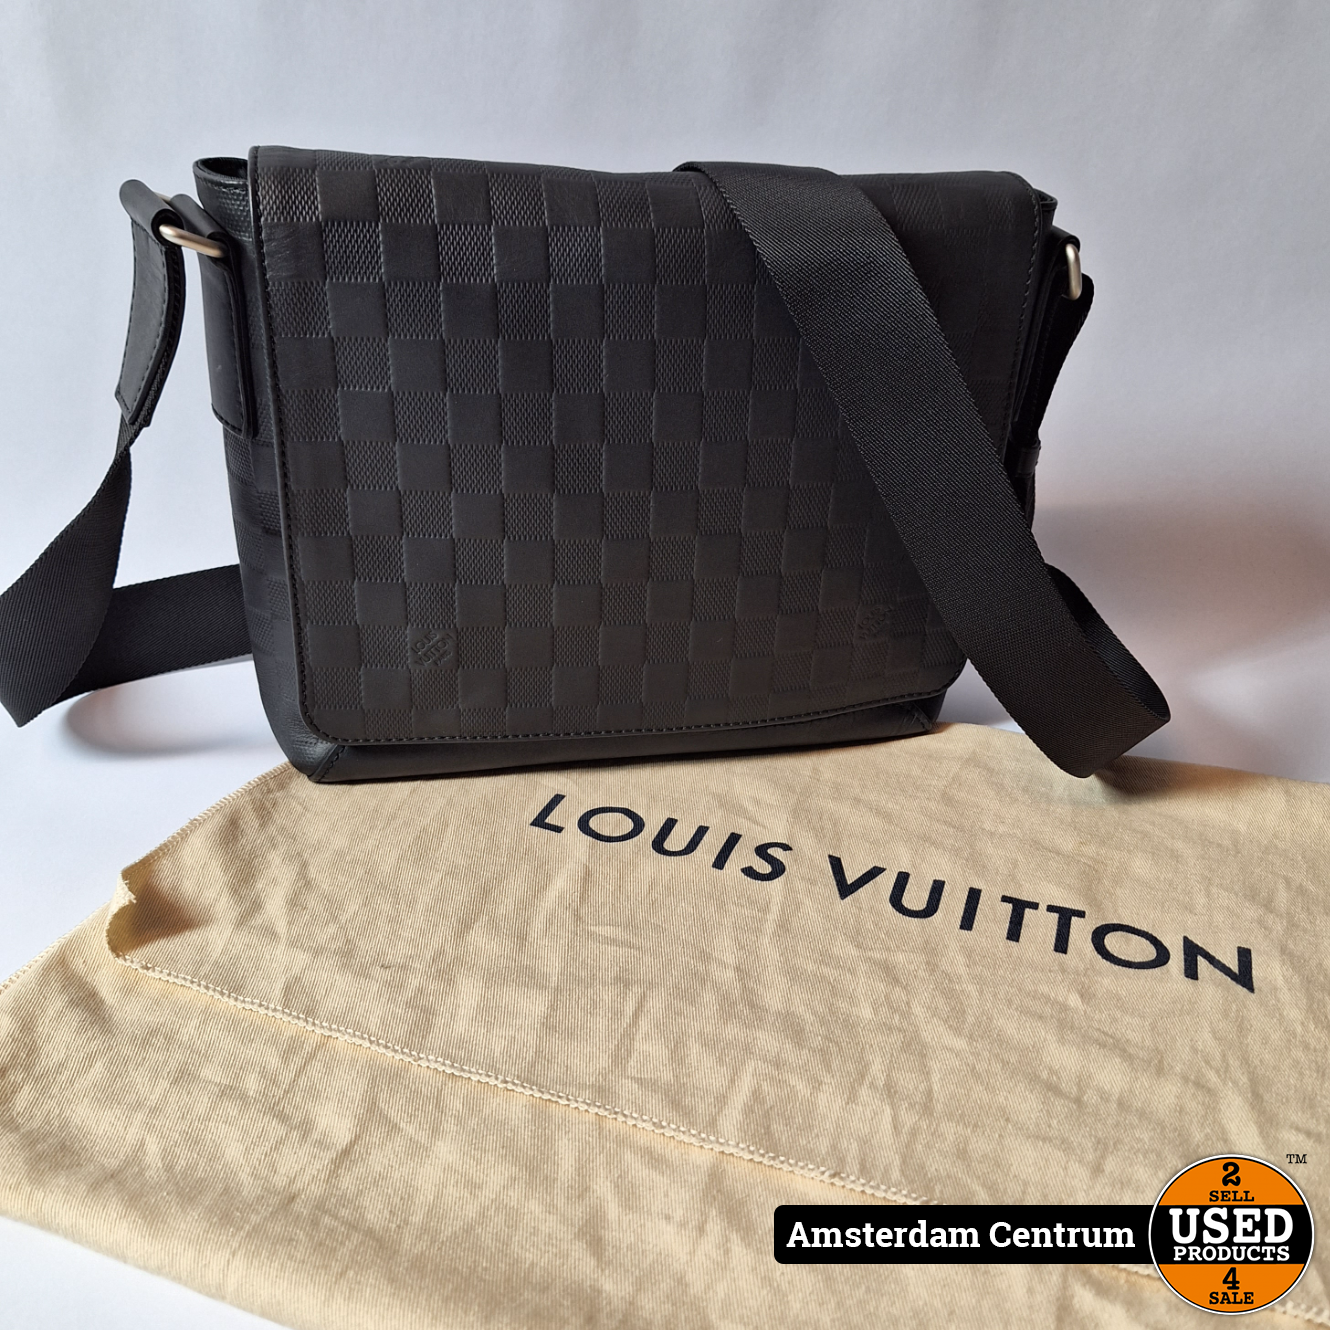 Tweedehands Louis Vuitton Tas kopen op Marktplaats